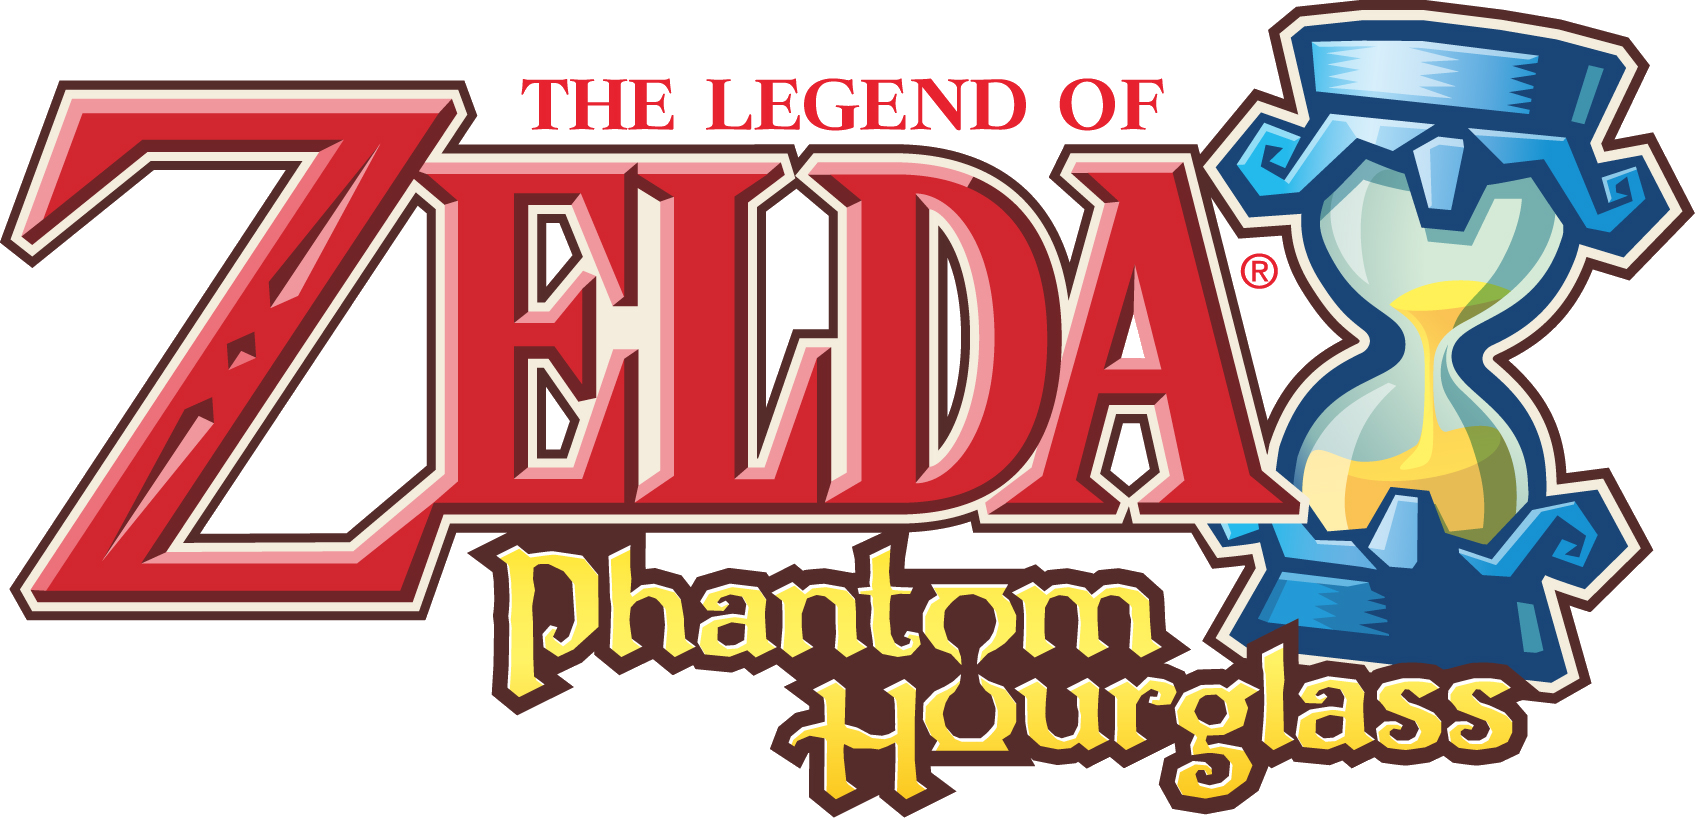 The Legend Of Zelda: Phantom Hourglass #24